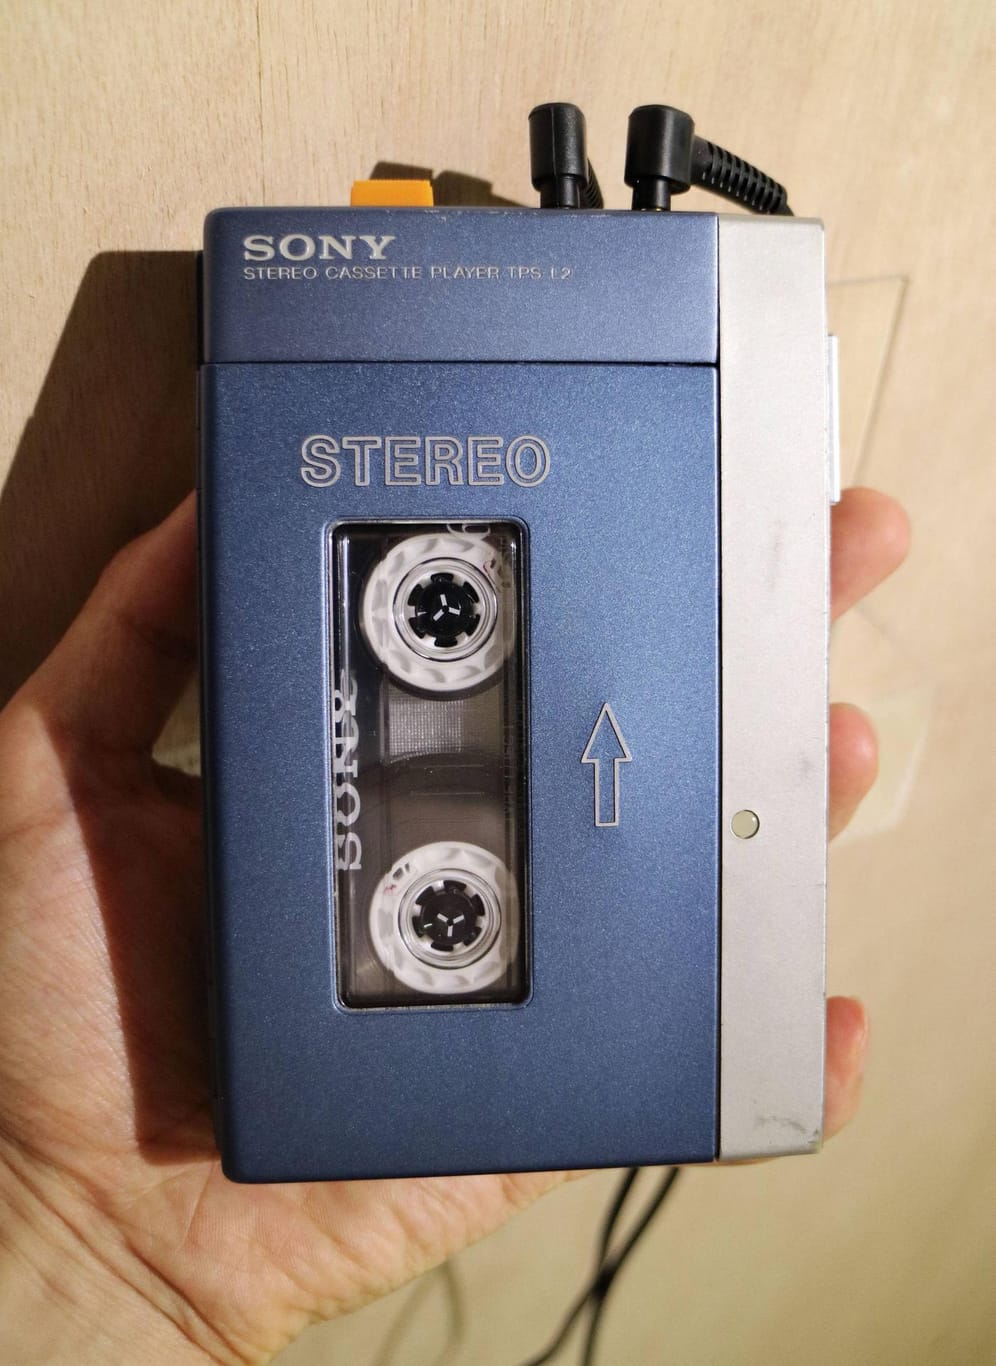 Der Walkman von Sony erschien 1979 und erlangte weltweit Kultstatus. In manchen Ländern hat sich der Begriff "Walkman" bereits als übliche Bezeichnung für tragbare Kassettenspieler etabliert. Mitte der Achtzigerjahre veröffentlichte Sony auch einen Walkman, der CDs abspielen konnte. Der Kassetten-Walkman selbst hielt sich bis Anfang 2010. Erst dann verkündete Sony, dass es die Produktion des Geräts einstellen werde.